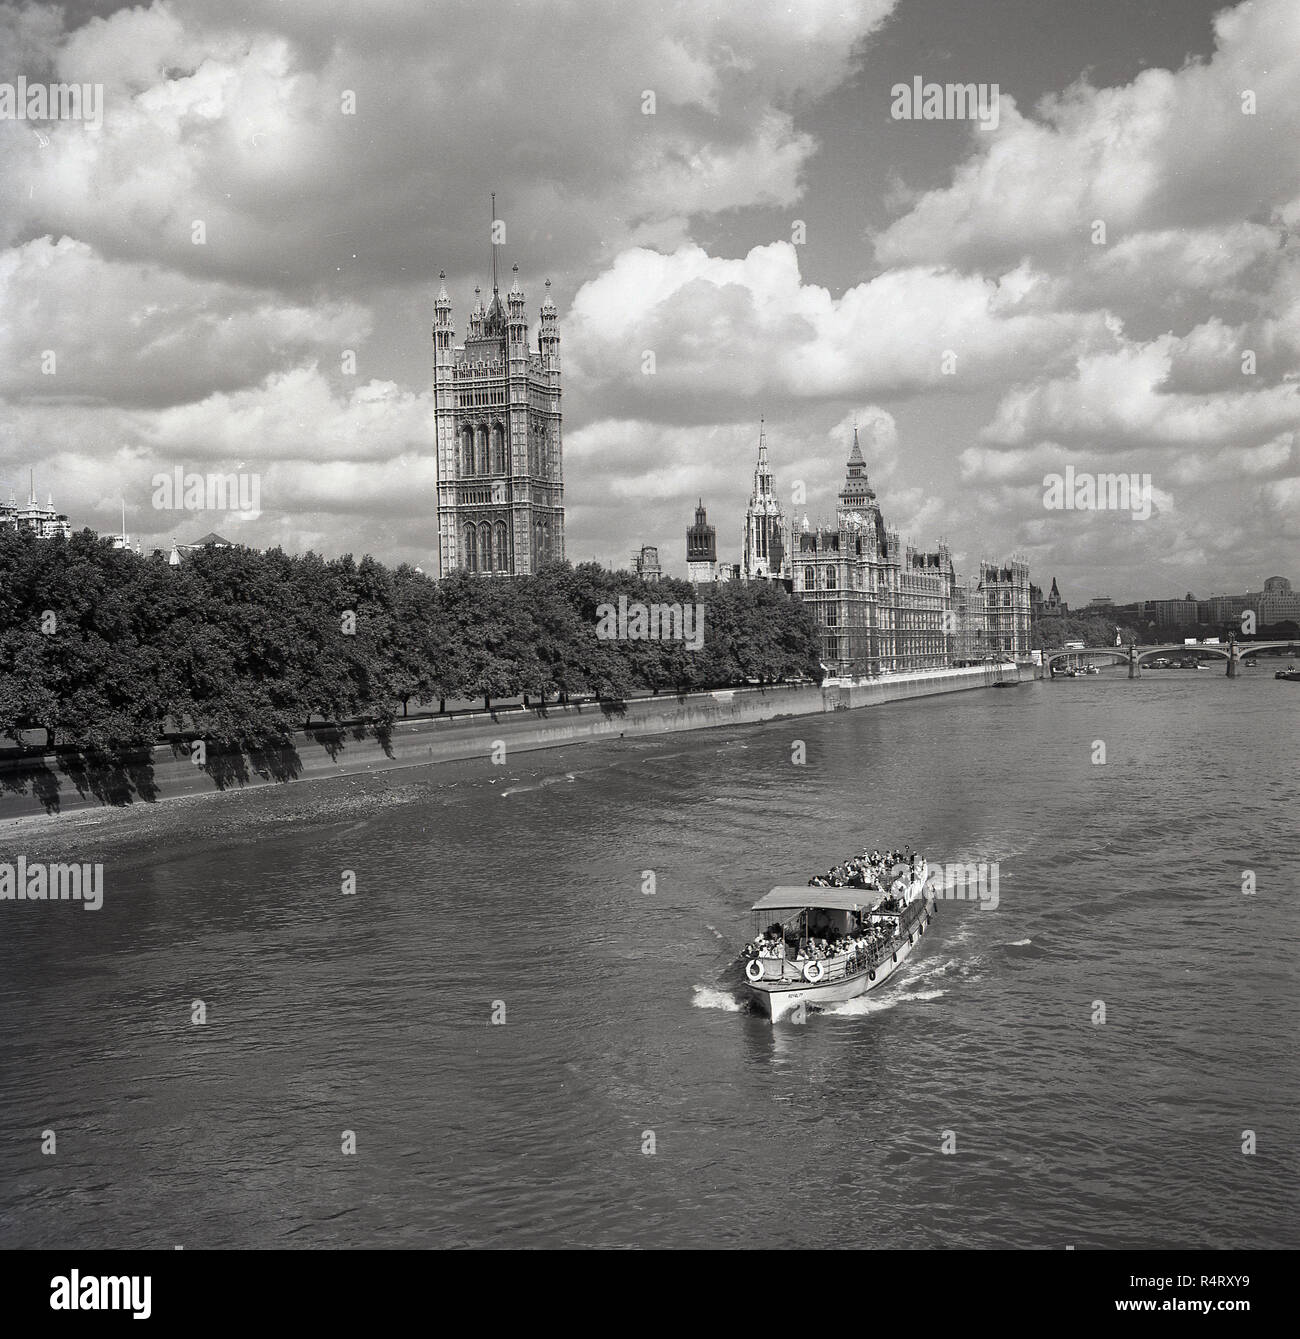 Années 1960, historiques, l'heure d'été et un bateau de plaisance de descendre la Tamise juste après avoir passé les Maisons du Parlement, les bâtiments du gouvernement du Royaume-Uni, Londres, Angleterre, Royaume-Uni. Banque D'Images